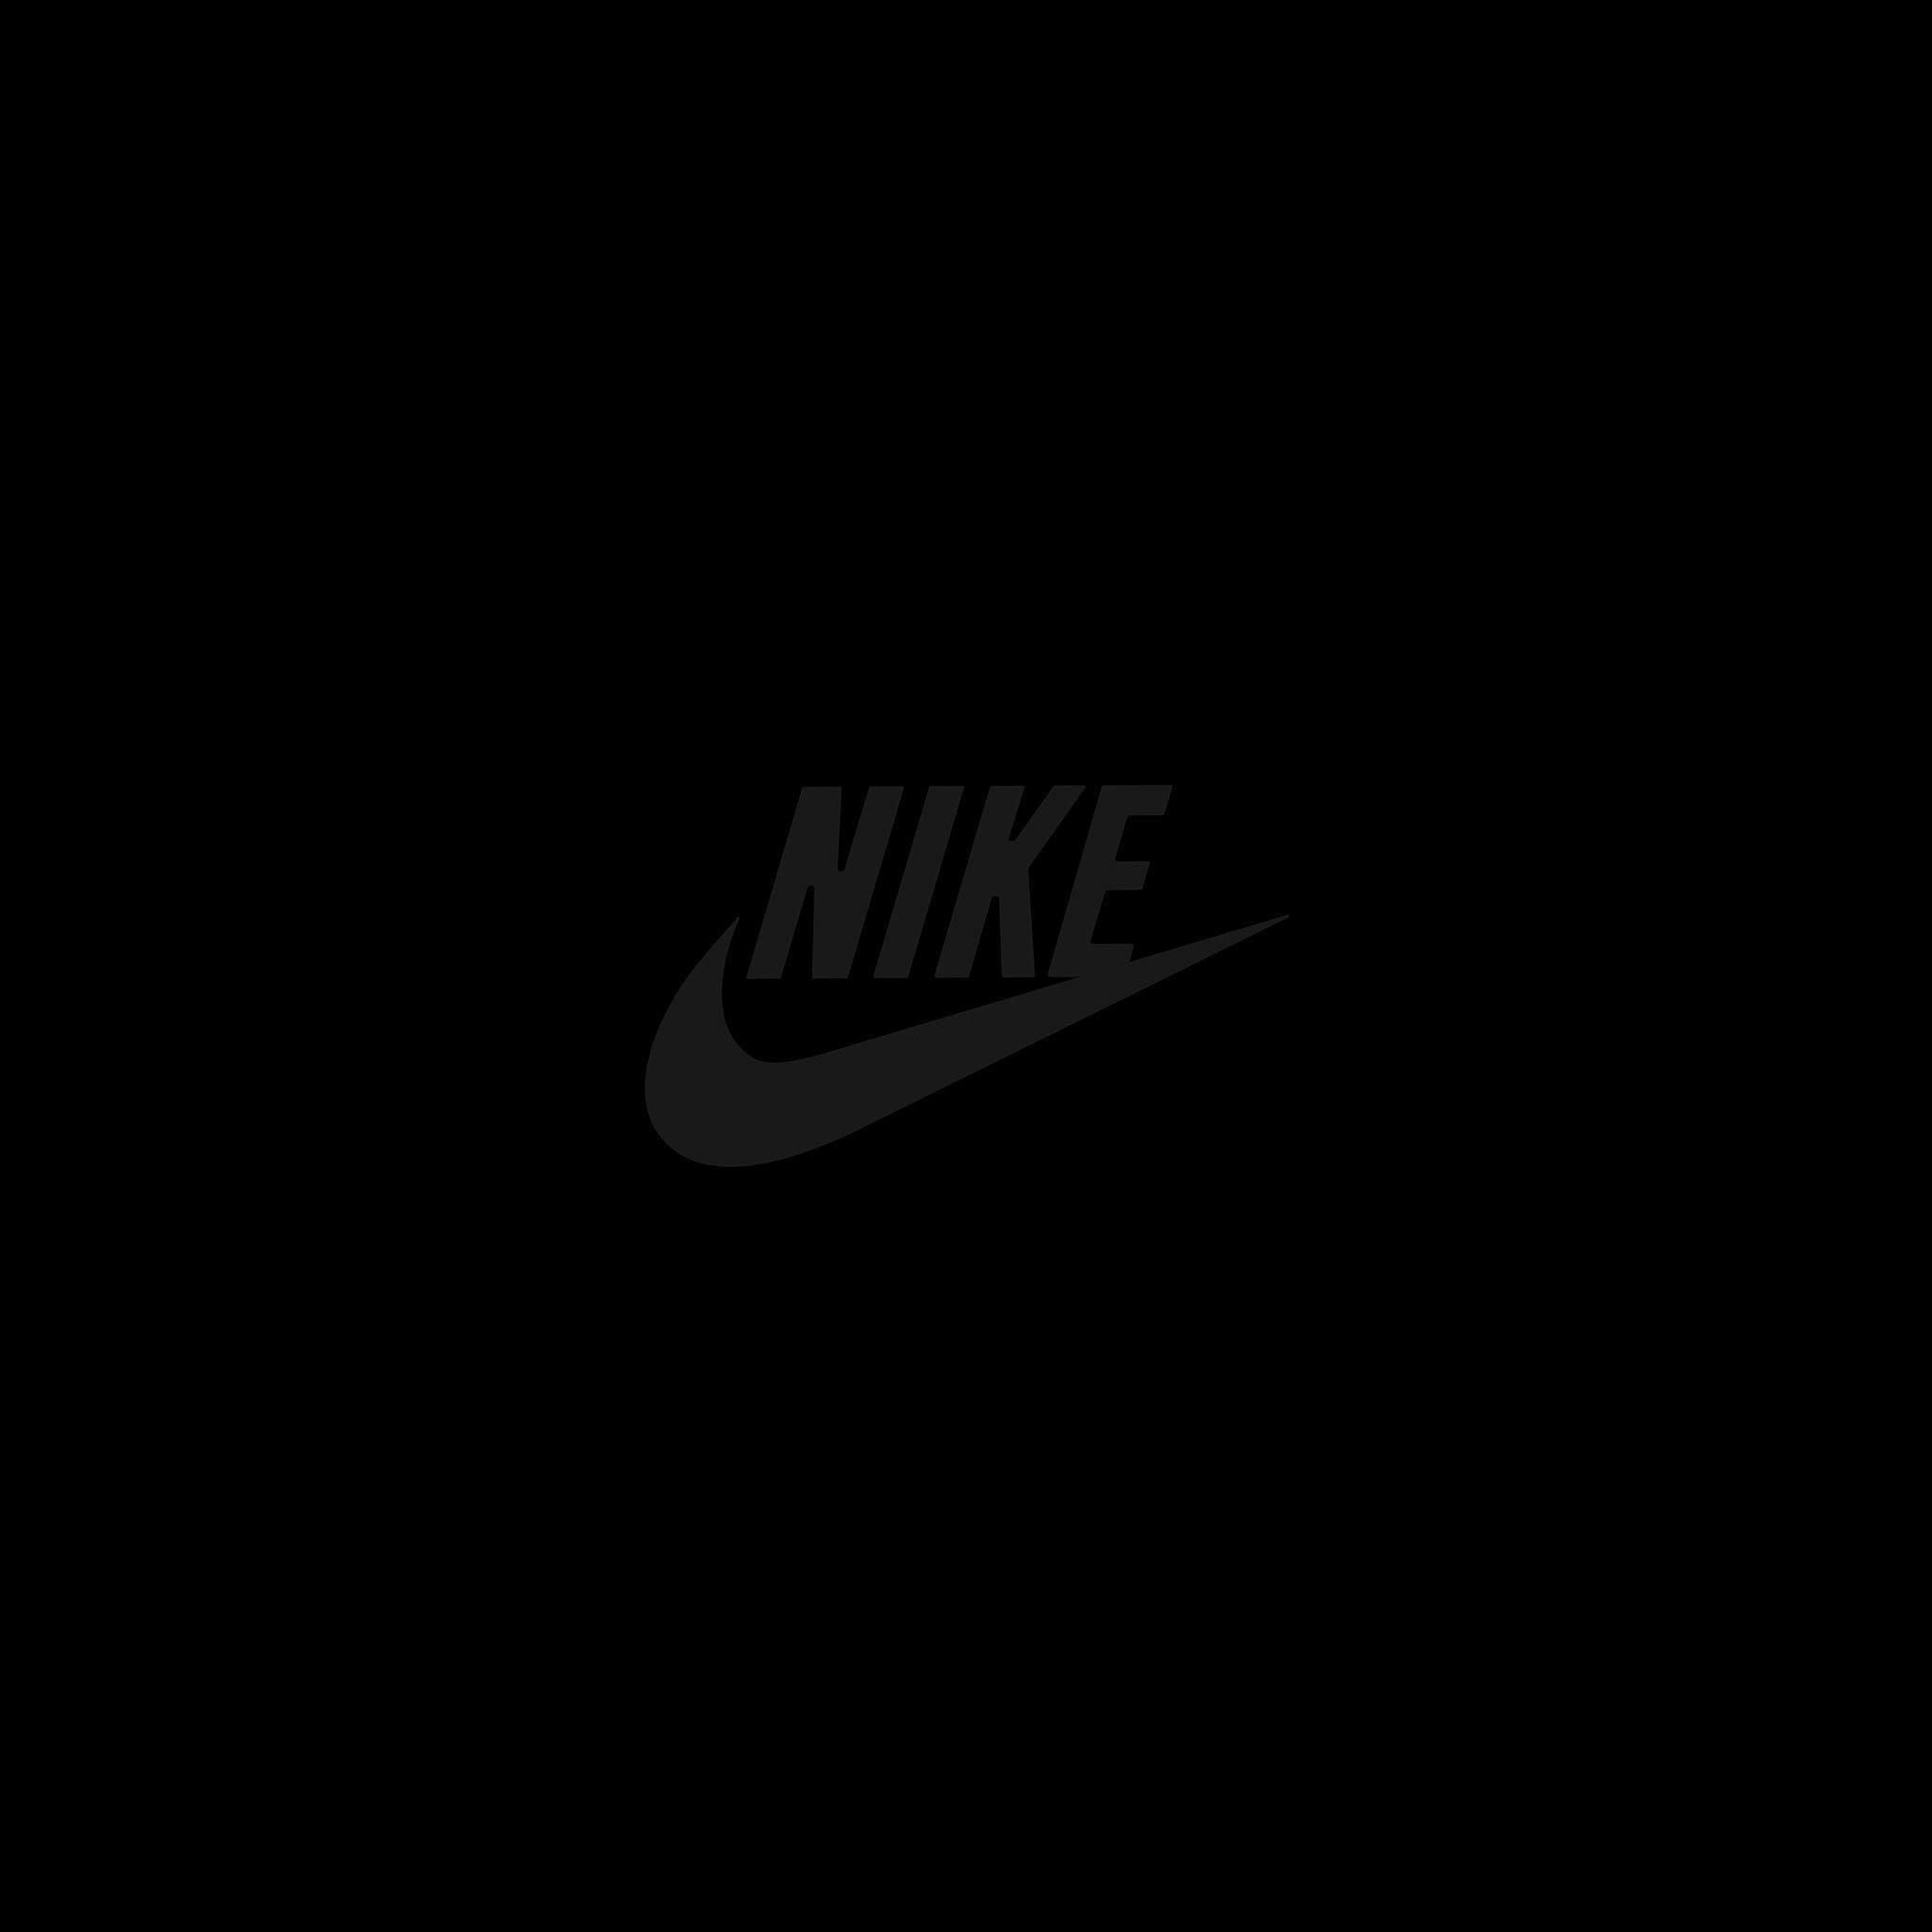 2048x2048 Hình nền Nike